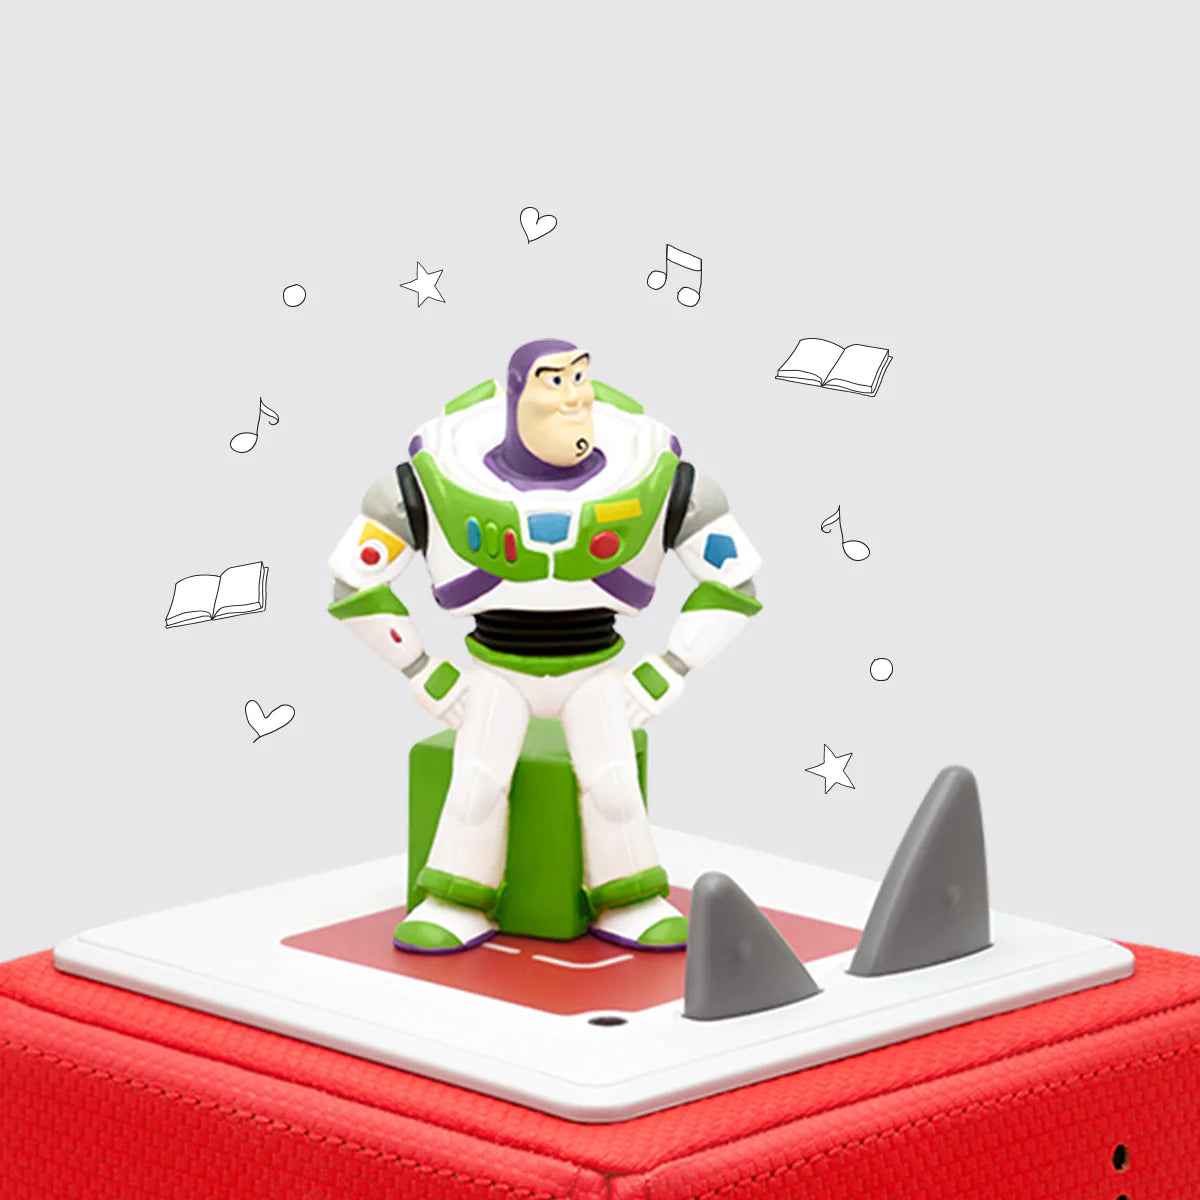 Disney: Toy Story 2 Buzz Lightyear by Tonies #10000685